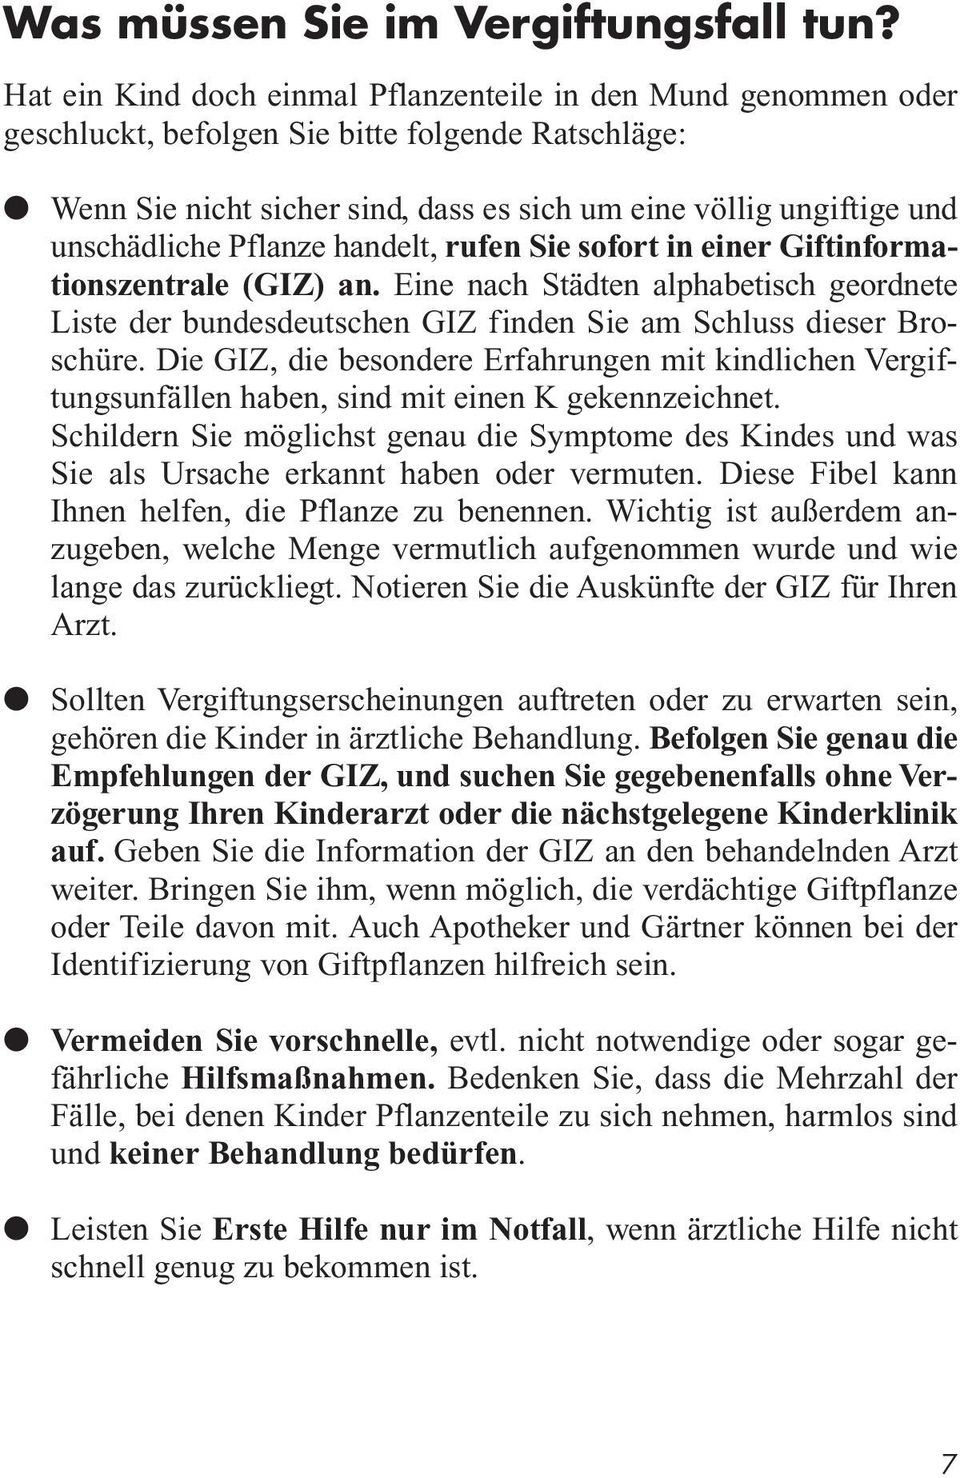 Pflanze handelt, rufen Sie sofort in einer Giftinformationszentrale (GIZ) an. Eine nach Städten alphabetisch geordnete Liste der bundesdeutschen GIZ finden Sie am Schluss dieser Broschüre.